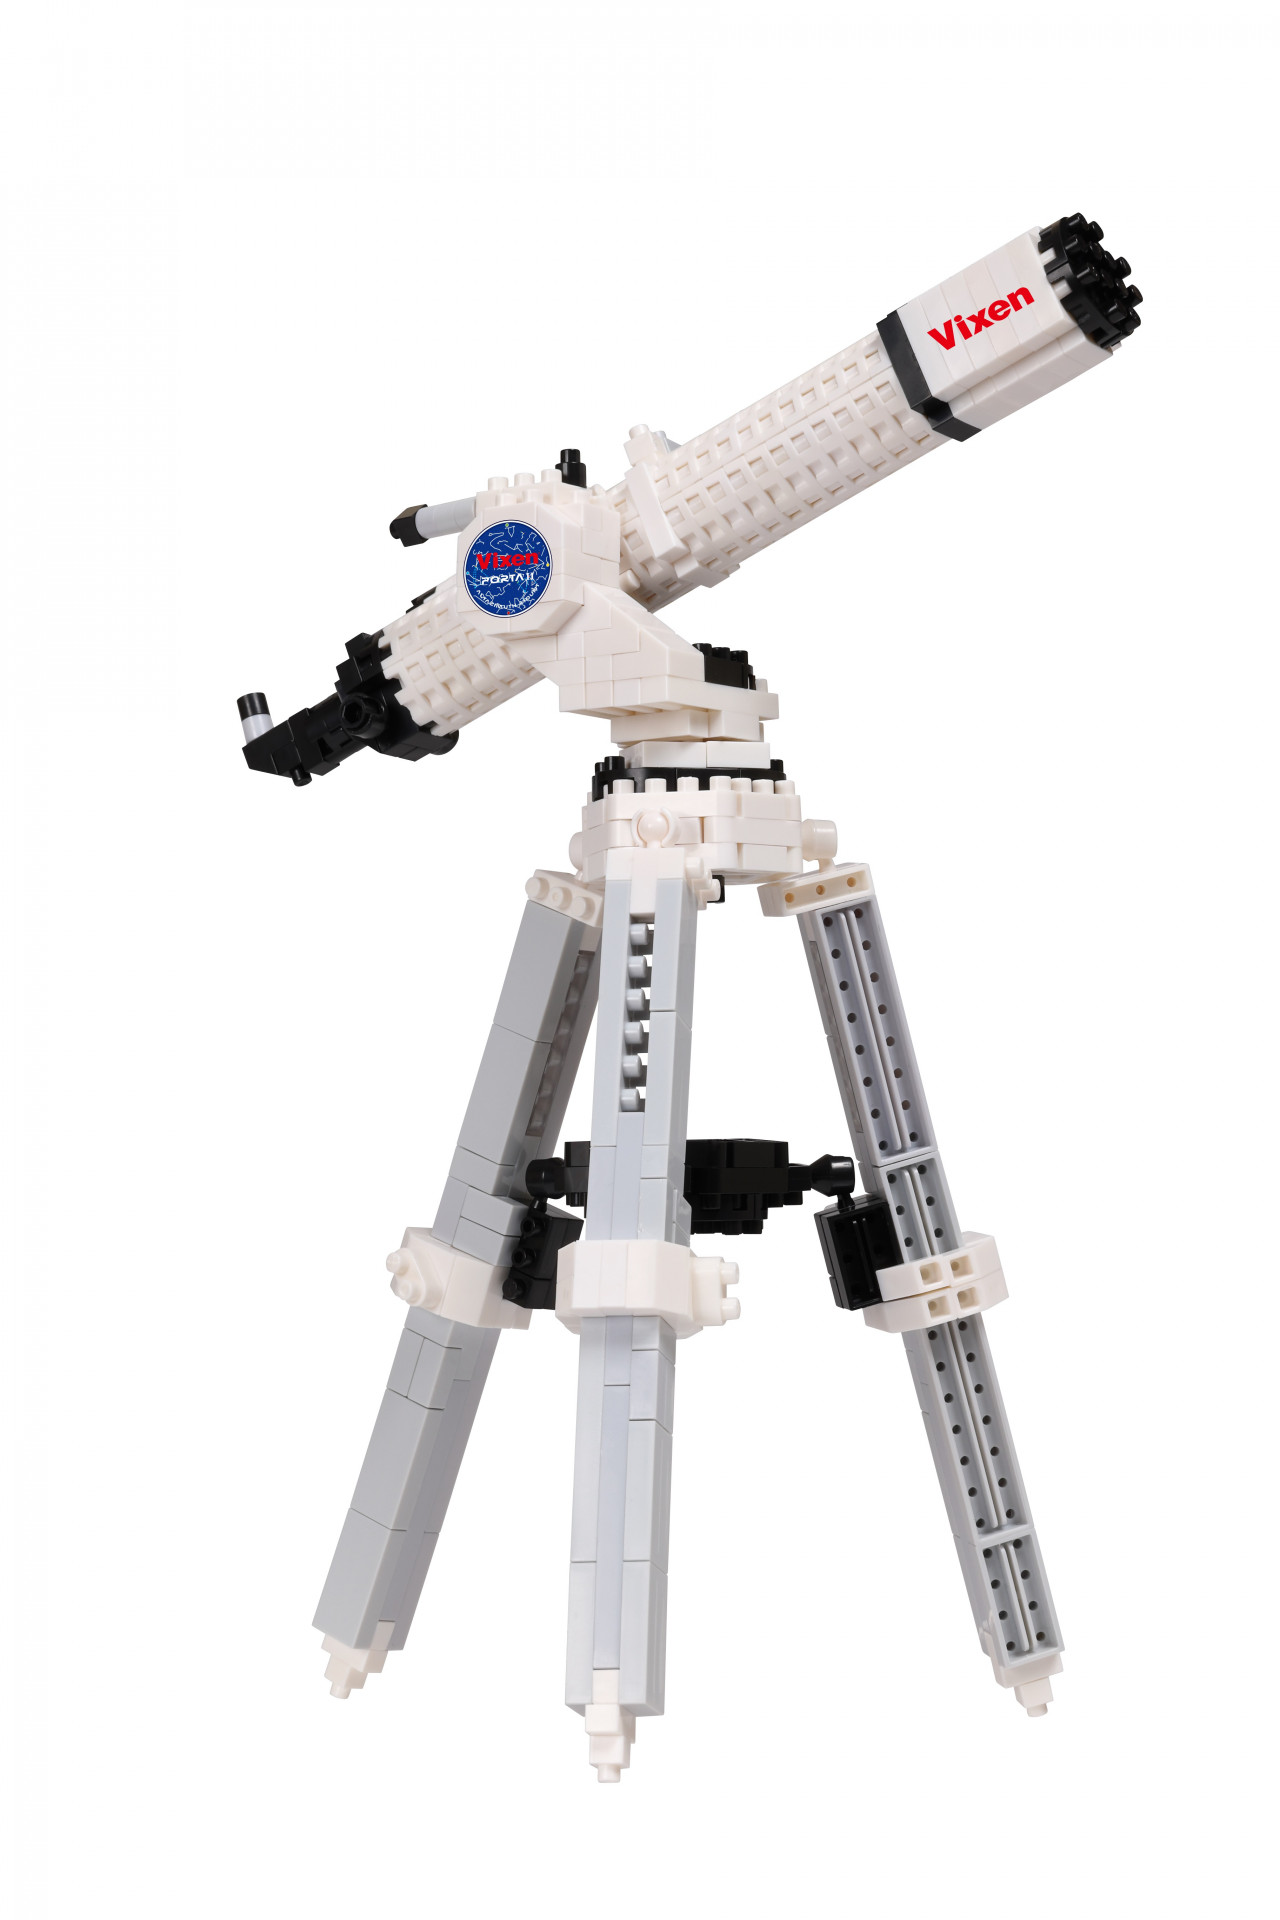 【宇宙系列】Vixen Porta II A80Mf 經緯儀天文望遠鏡